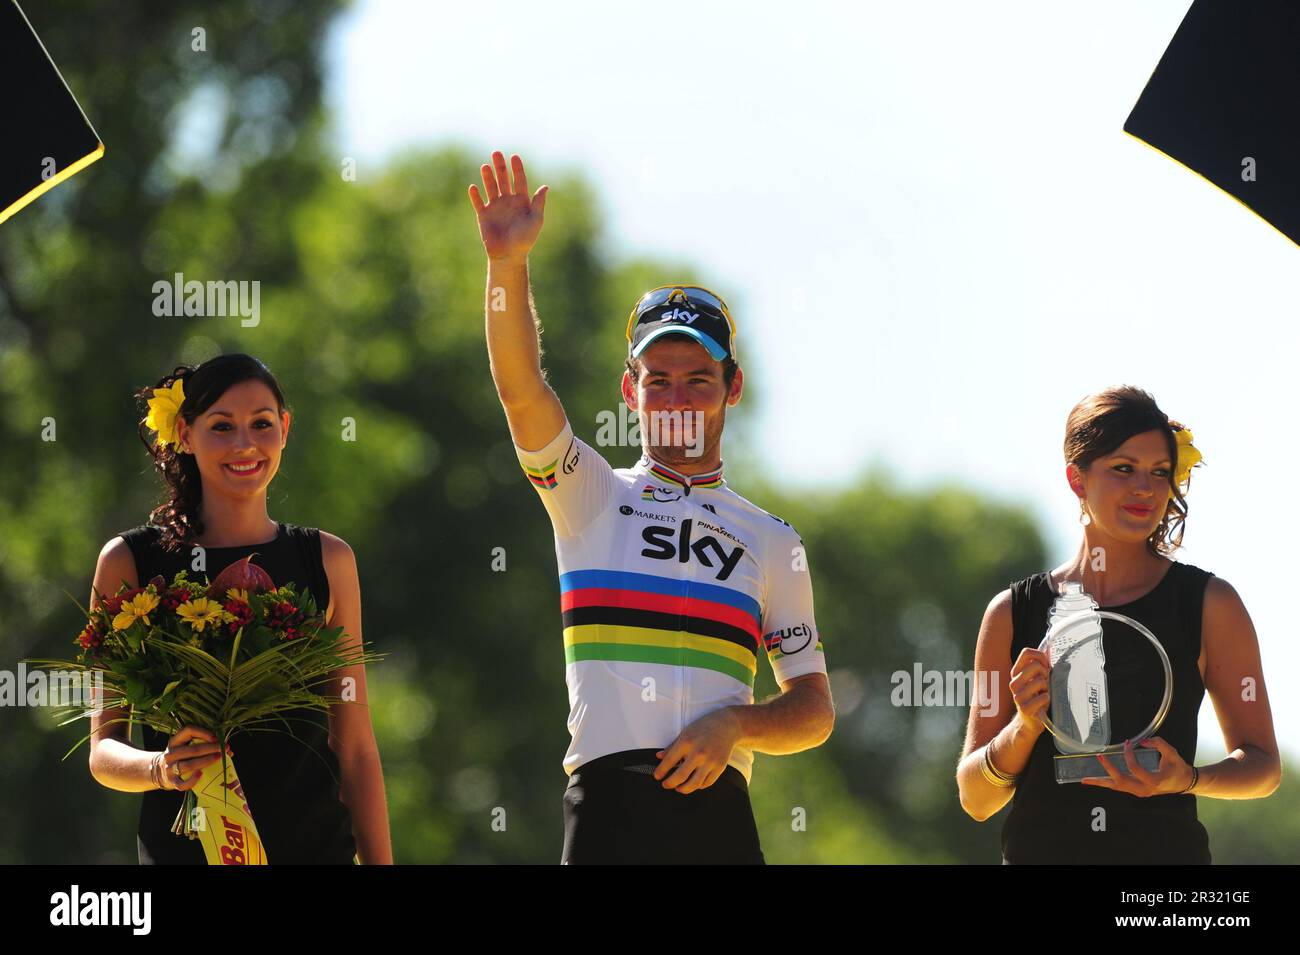 File foto datata 22-07-2012 di Mark Cavendish, che ha annunciato il ritiro dal ciclismo professionale alla fine della stagione corrente. Data di emissione: Lunedì 22 maggio 2023. Foto Stock